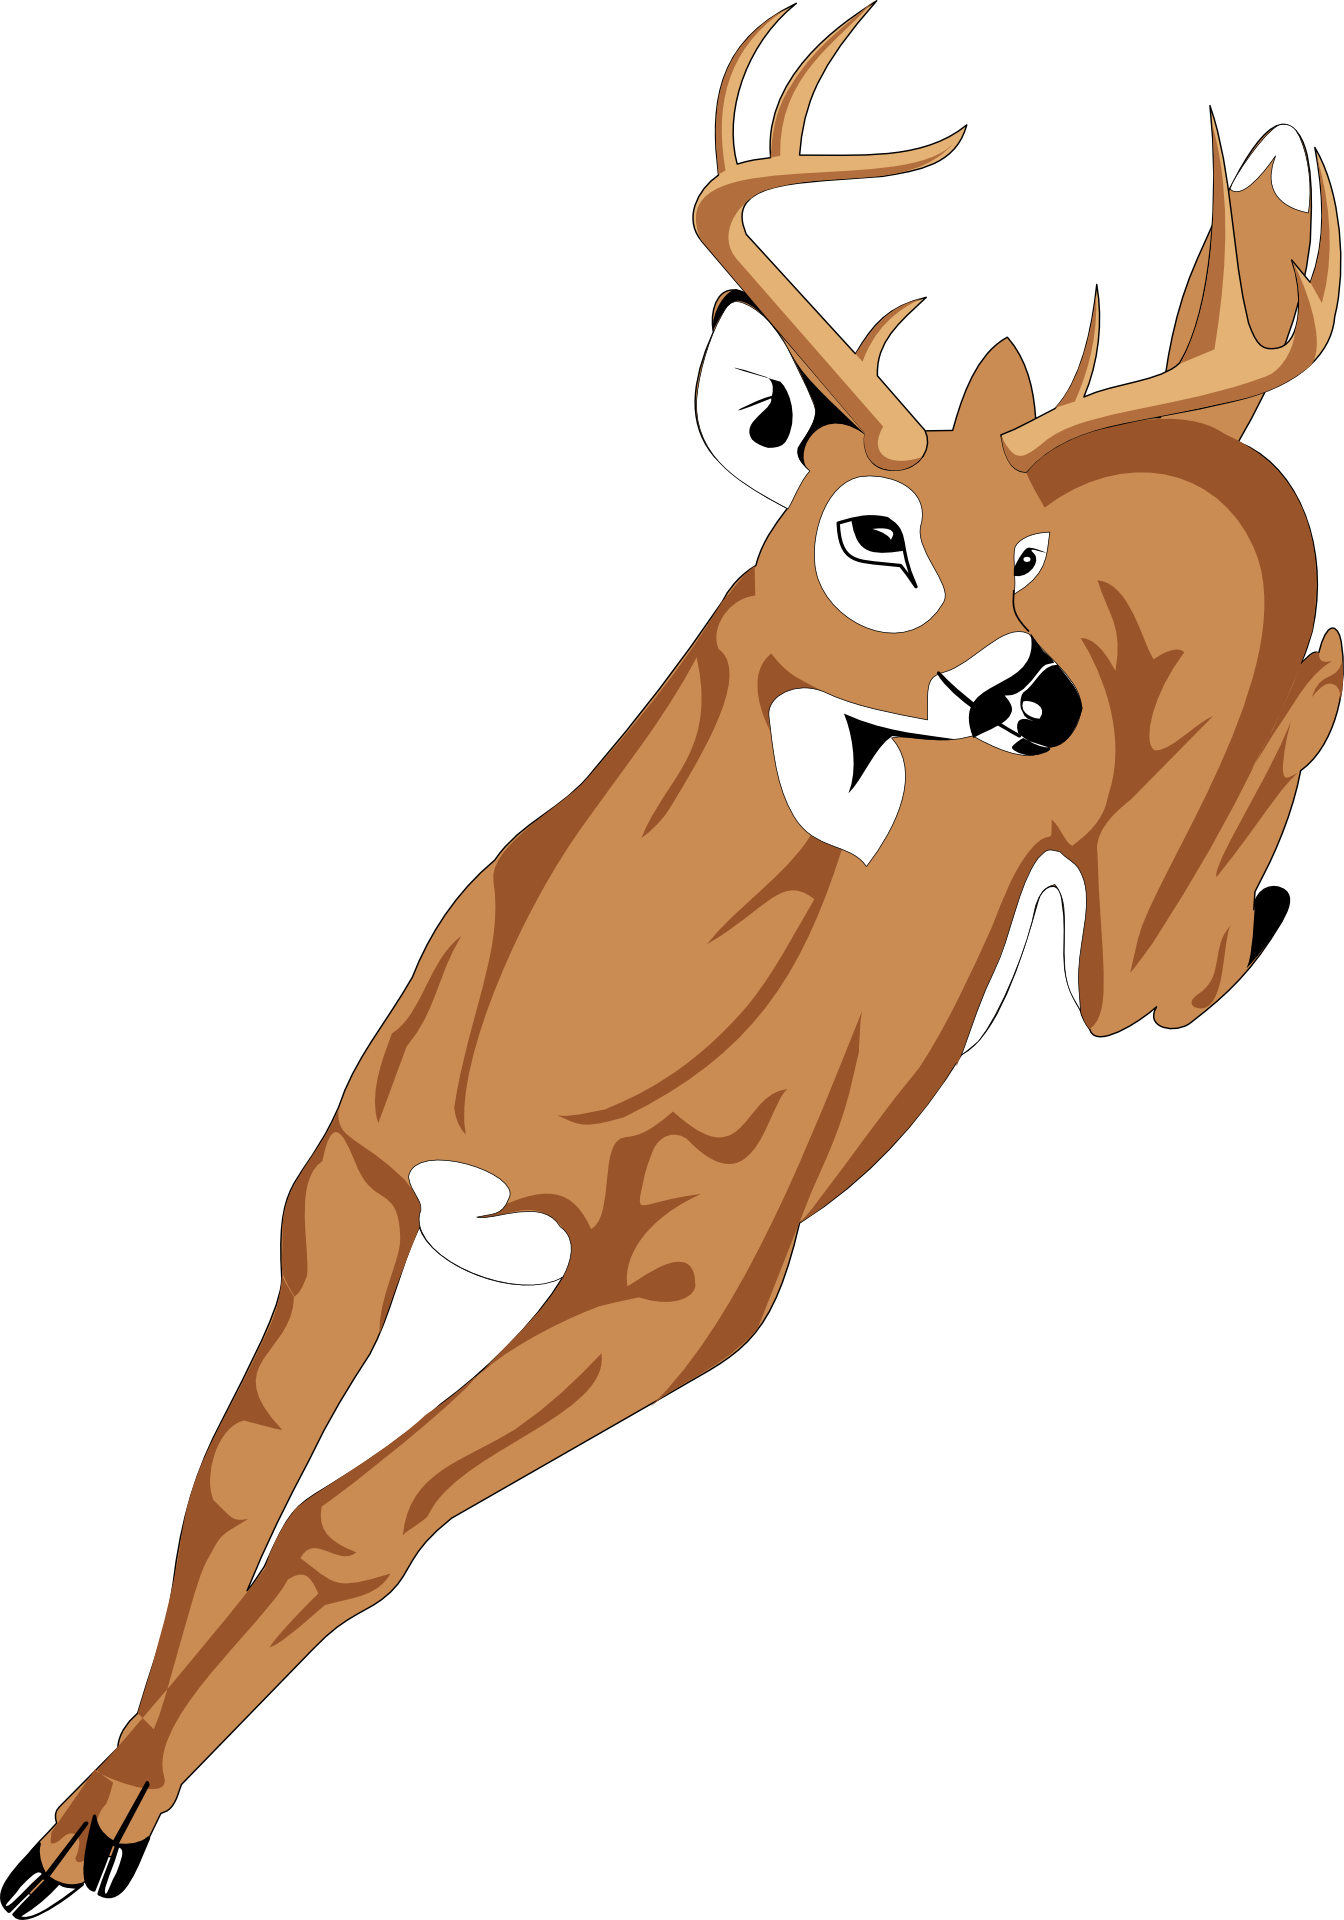 Cartoon animal-running deer vector